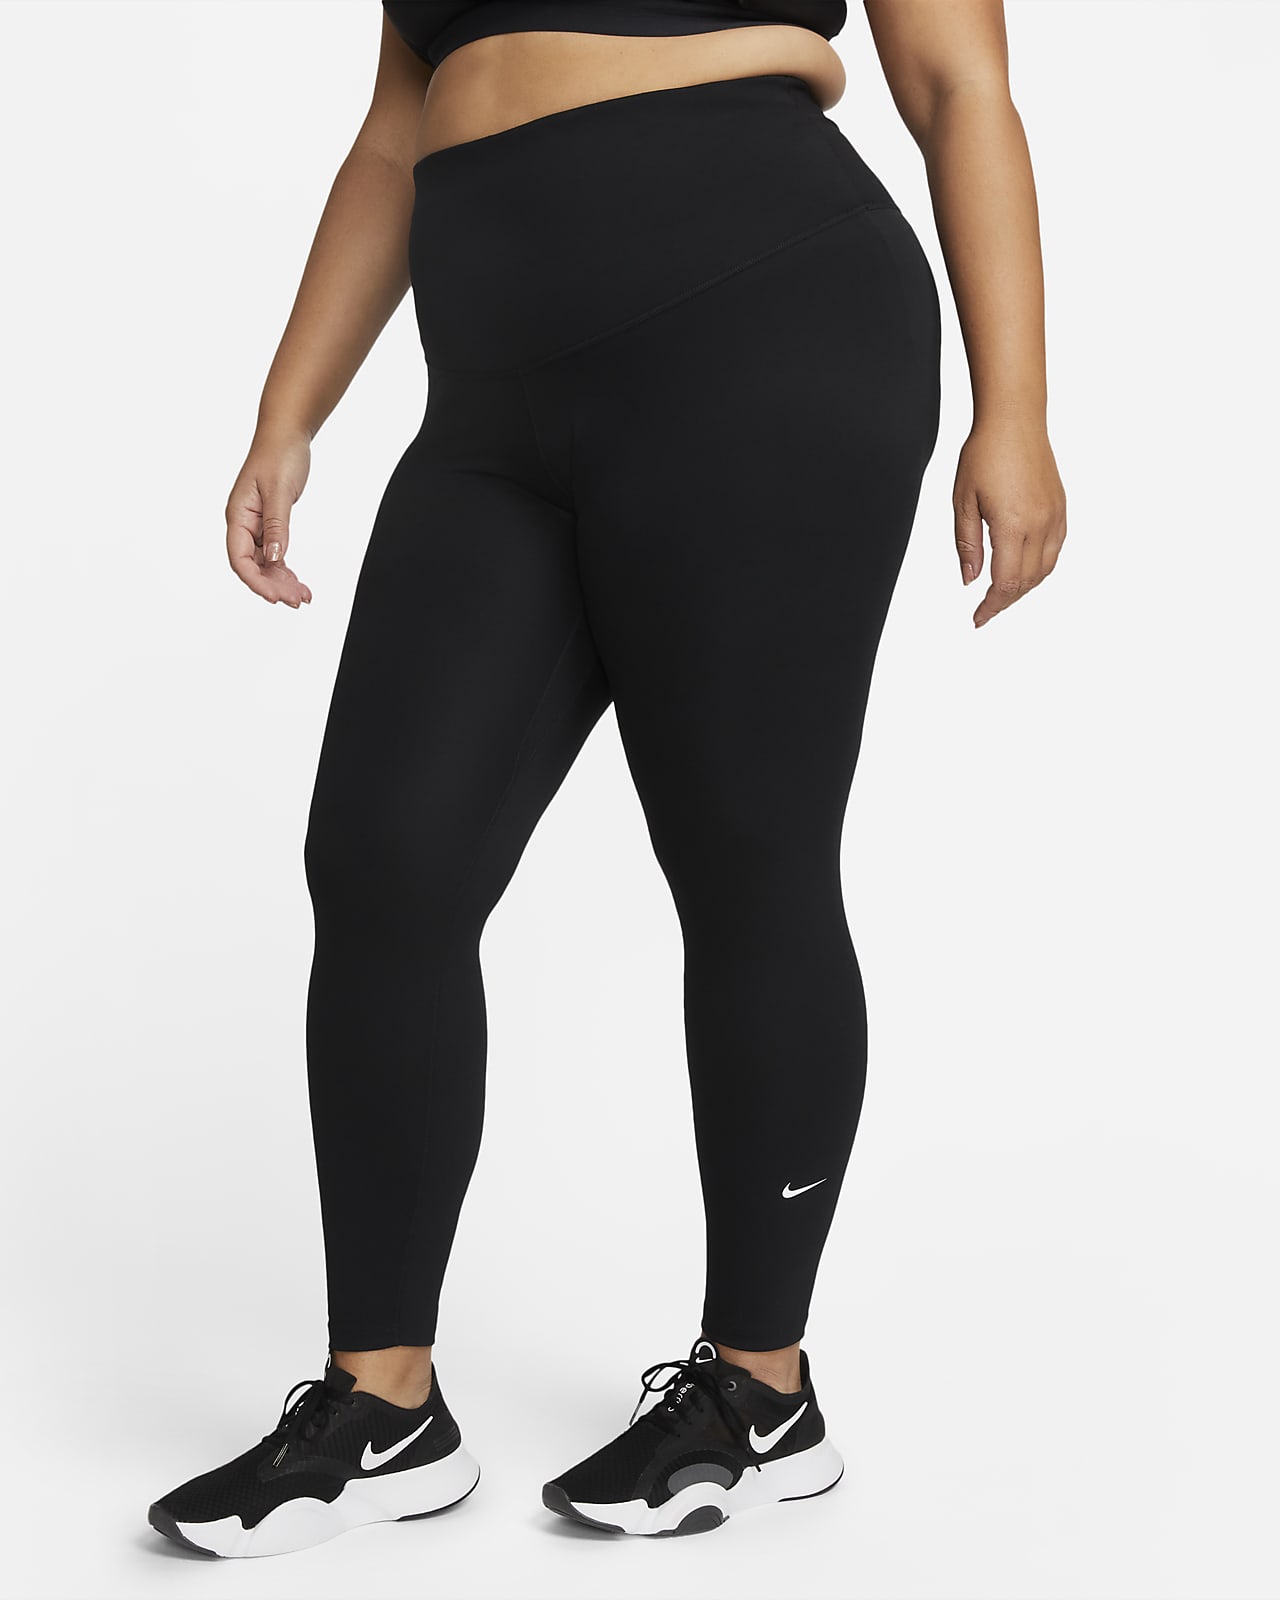 Nike One Damen-Leggings mit hohem Bund (große Größe)